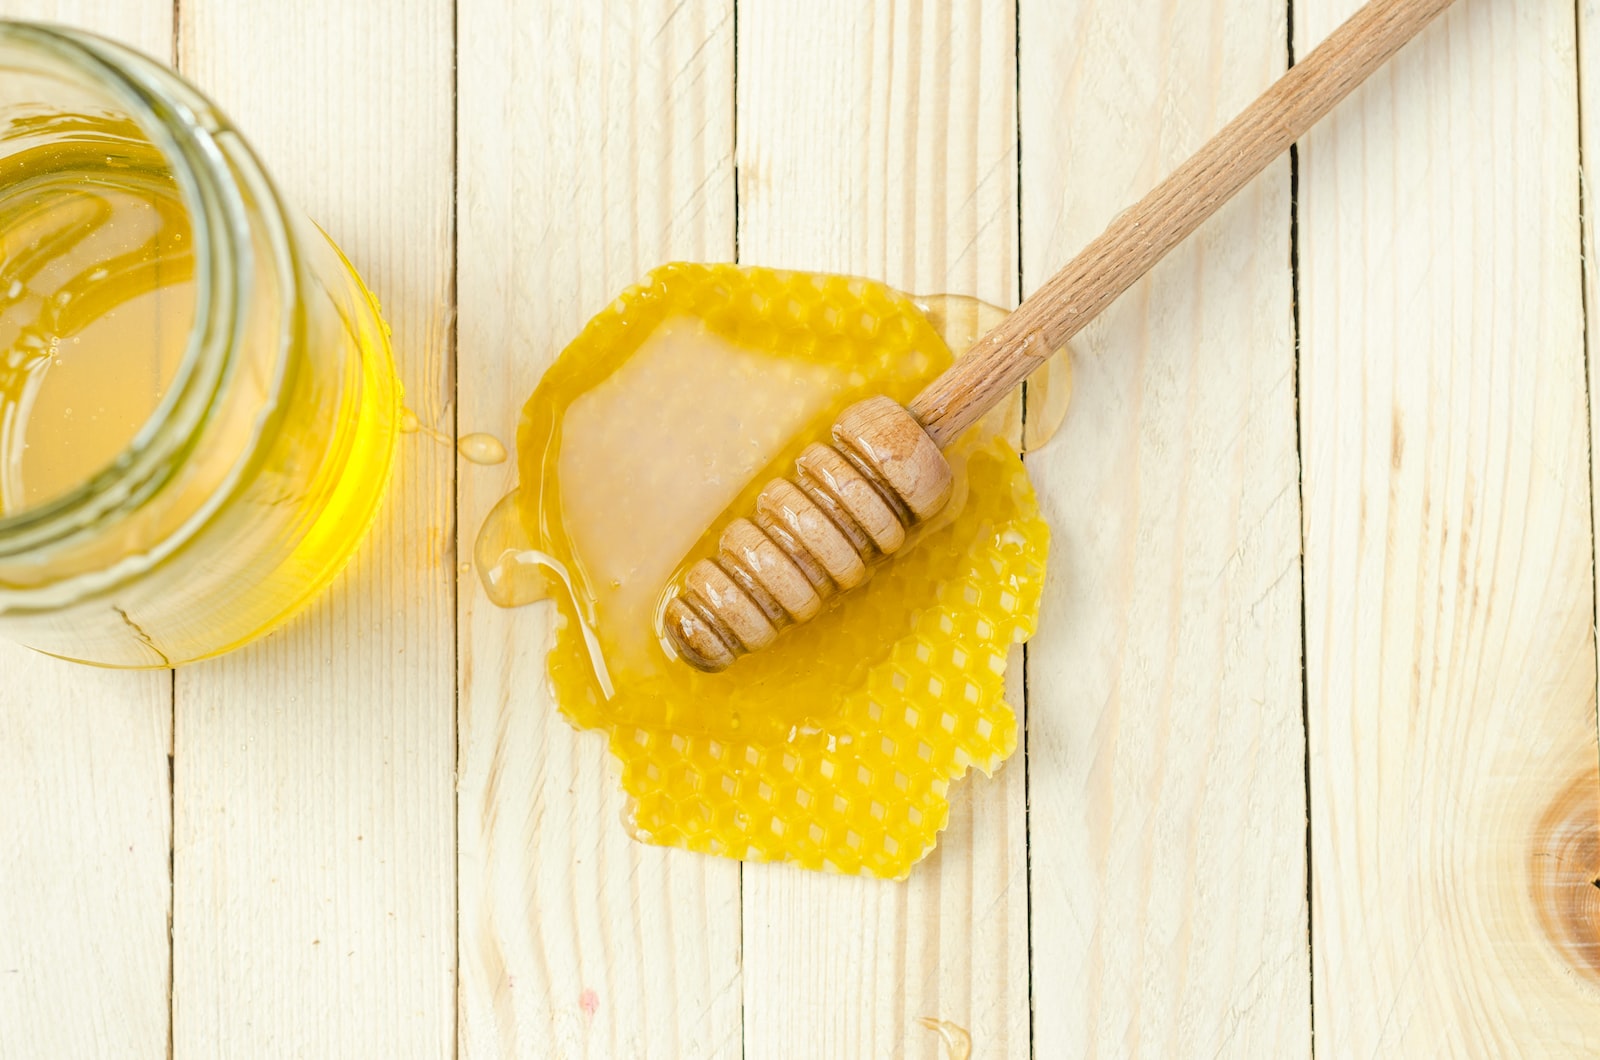 Le miel un excellent antibiotique naturel sous exploité